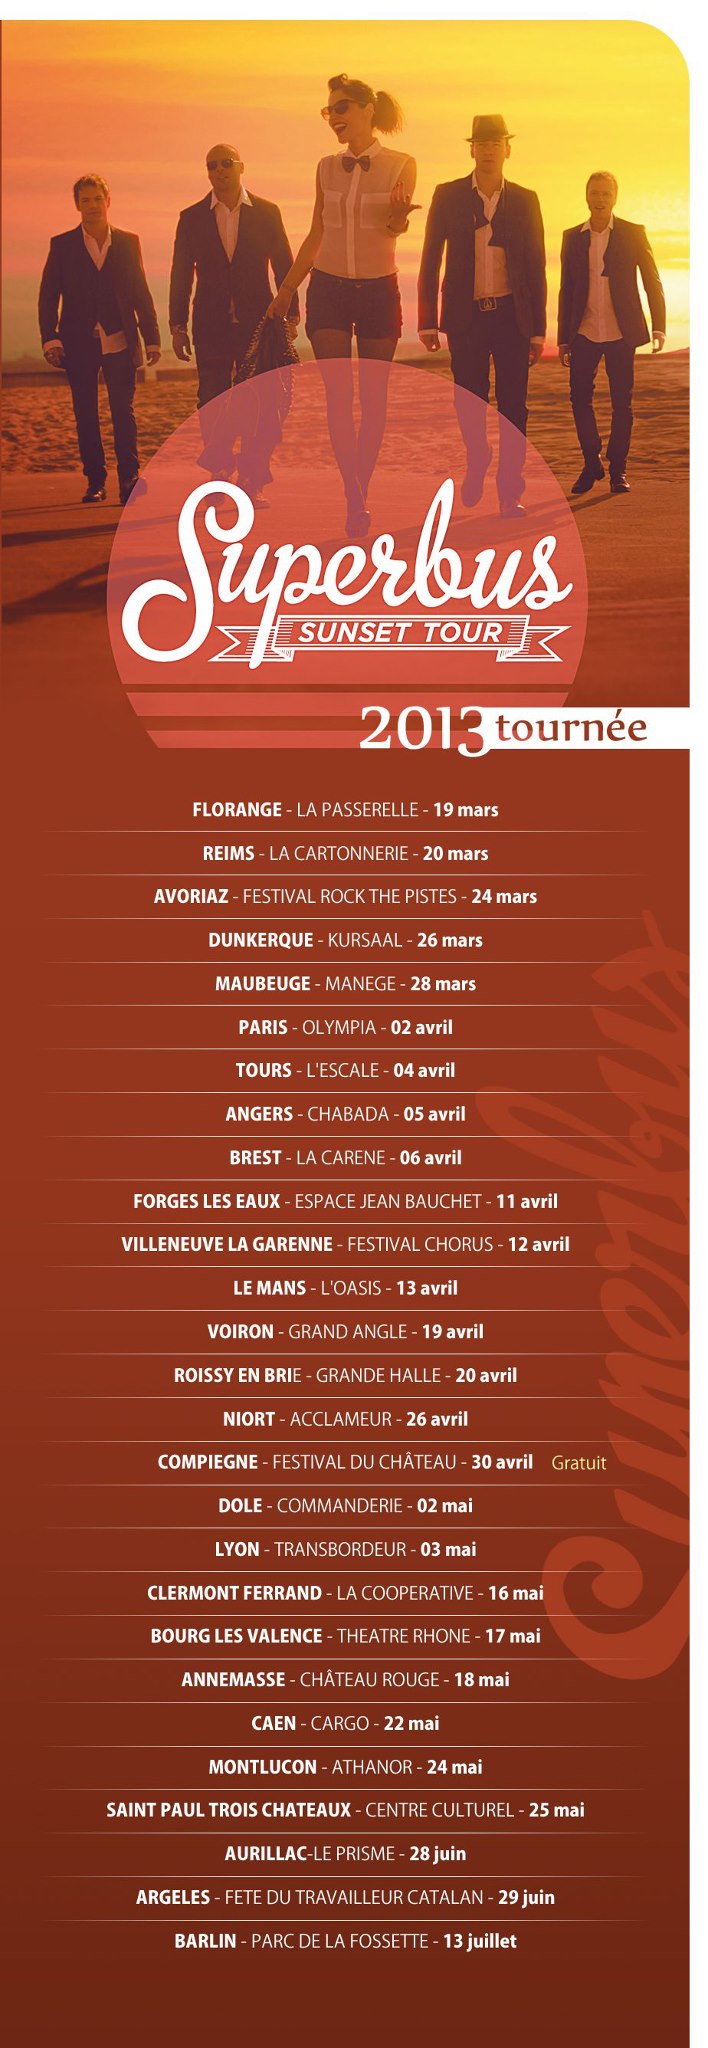 SUPERBUS "Sunset Club Tour" 11/12/2012 à l'Olympia (Paris) : compte rendu 13021511352215789310868476